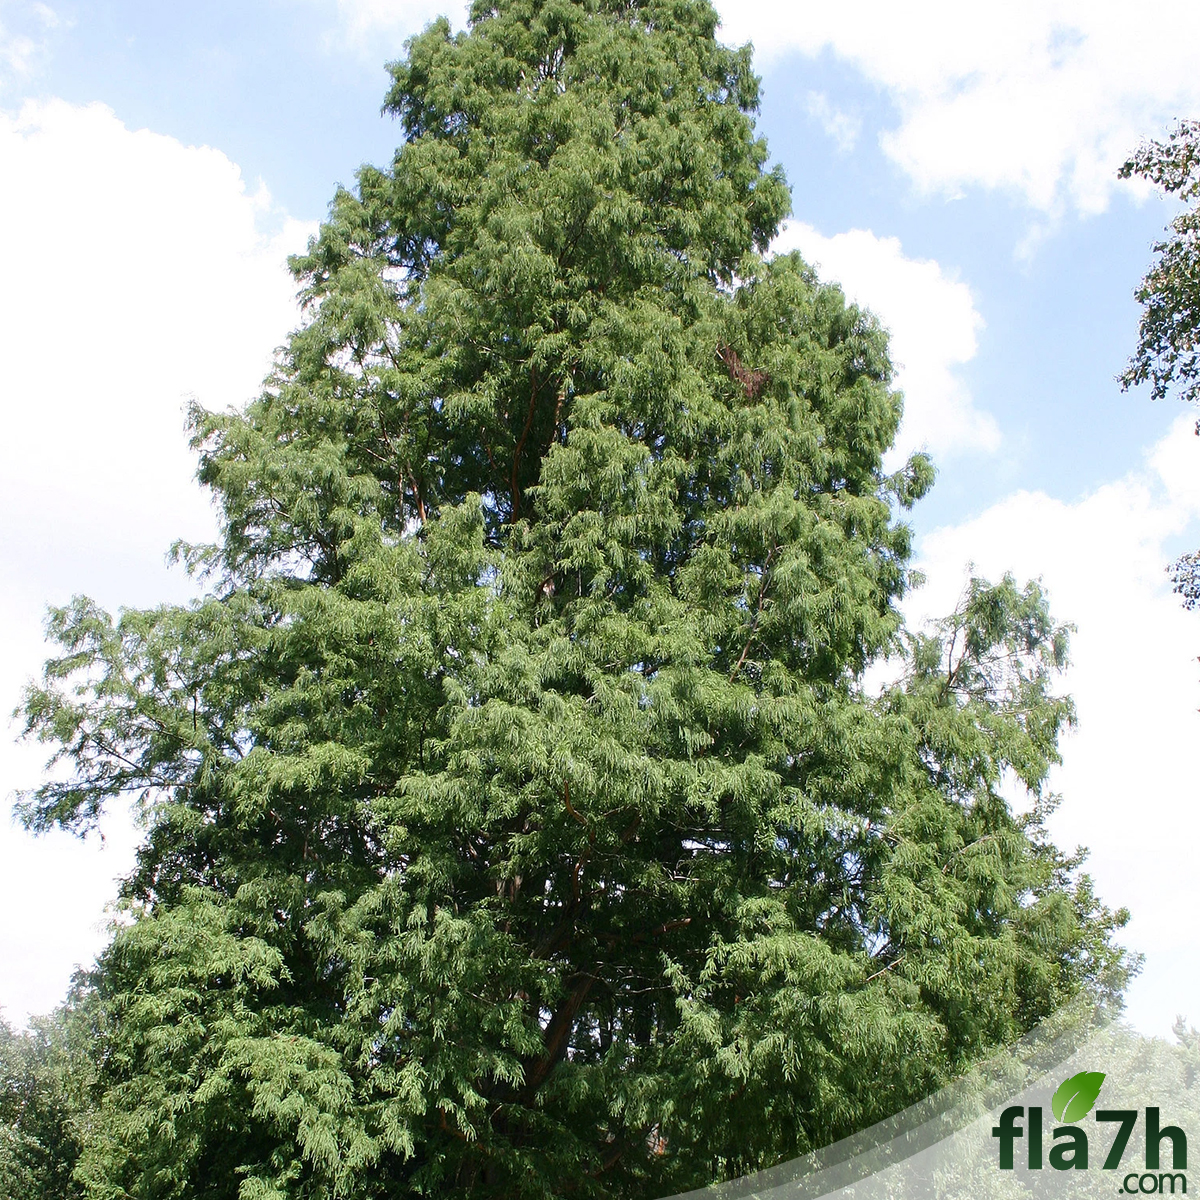 بذور شجرة تاكسوديوم - 40 بذرة - Taxodium Distichum